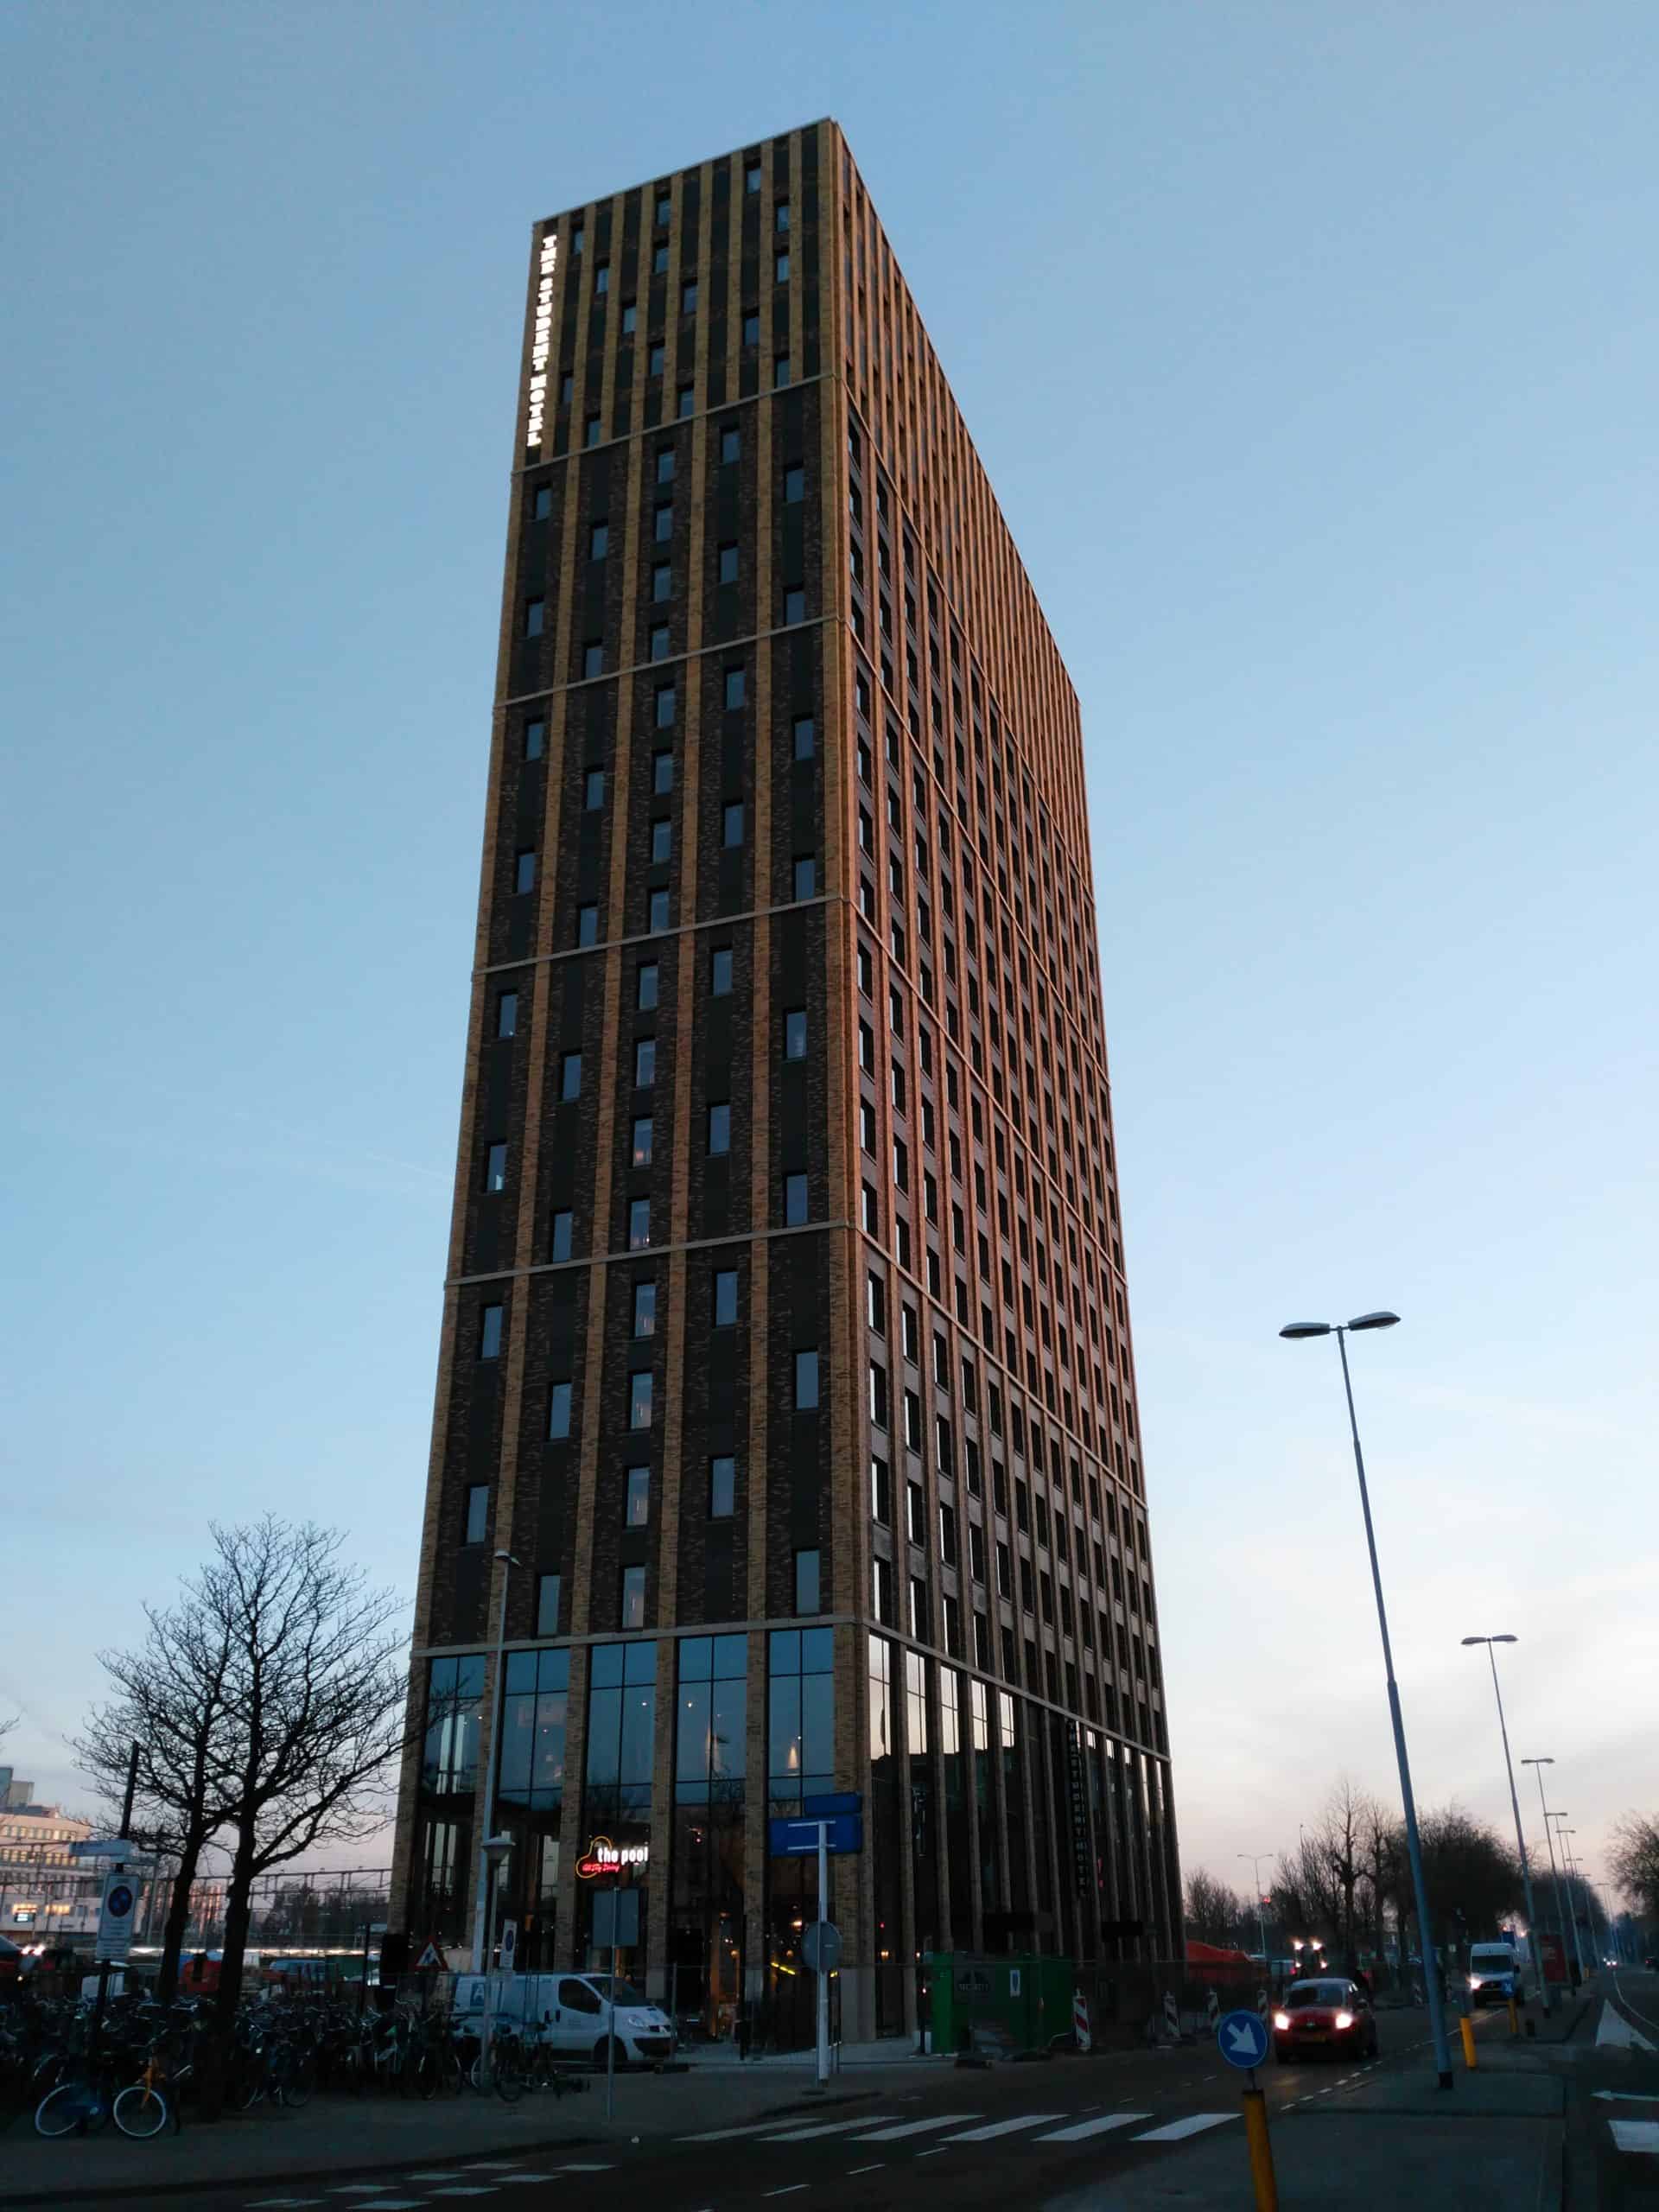 Nieman Raadgevende Ingenieurs adviseerde de bouwfysica en akoestiek van dit opgeleverde Student Hotel in Eindhoven. En voerde kwaliteitsmetingen uit.